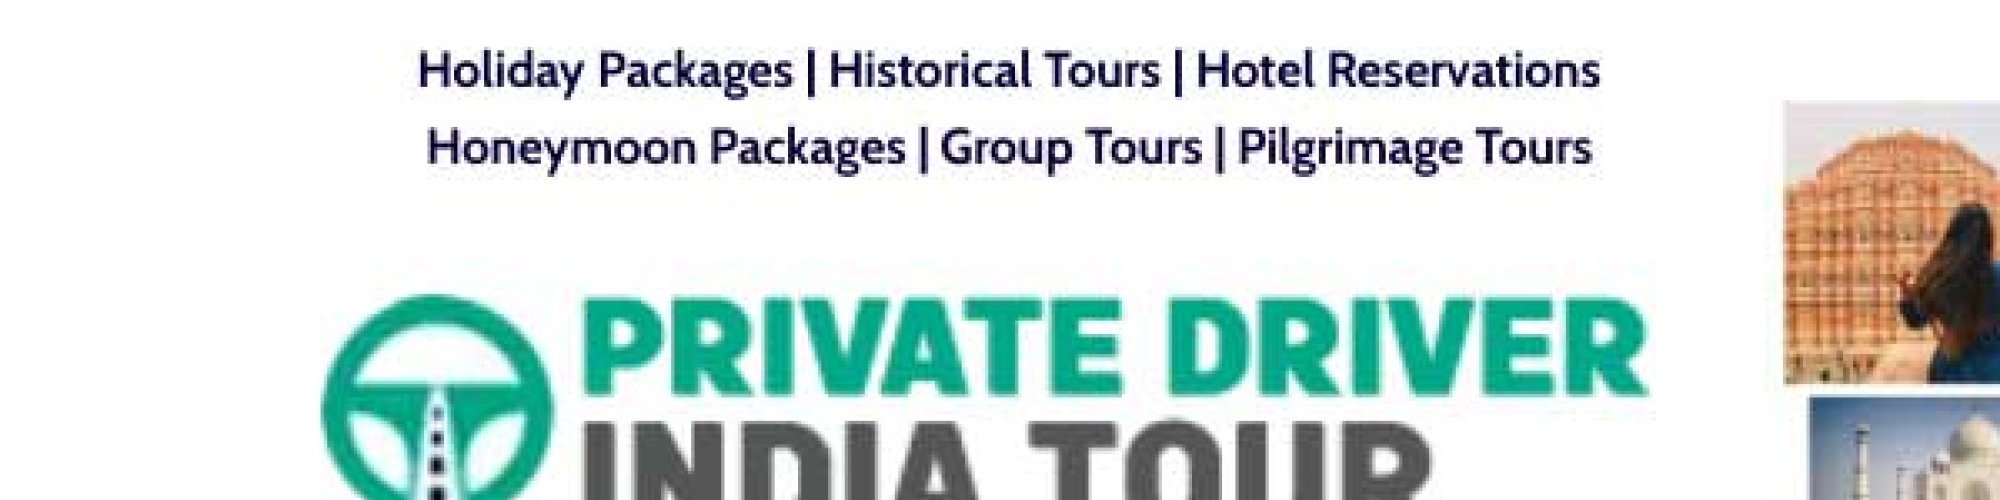 Private Driver India Tour